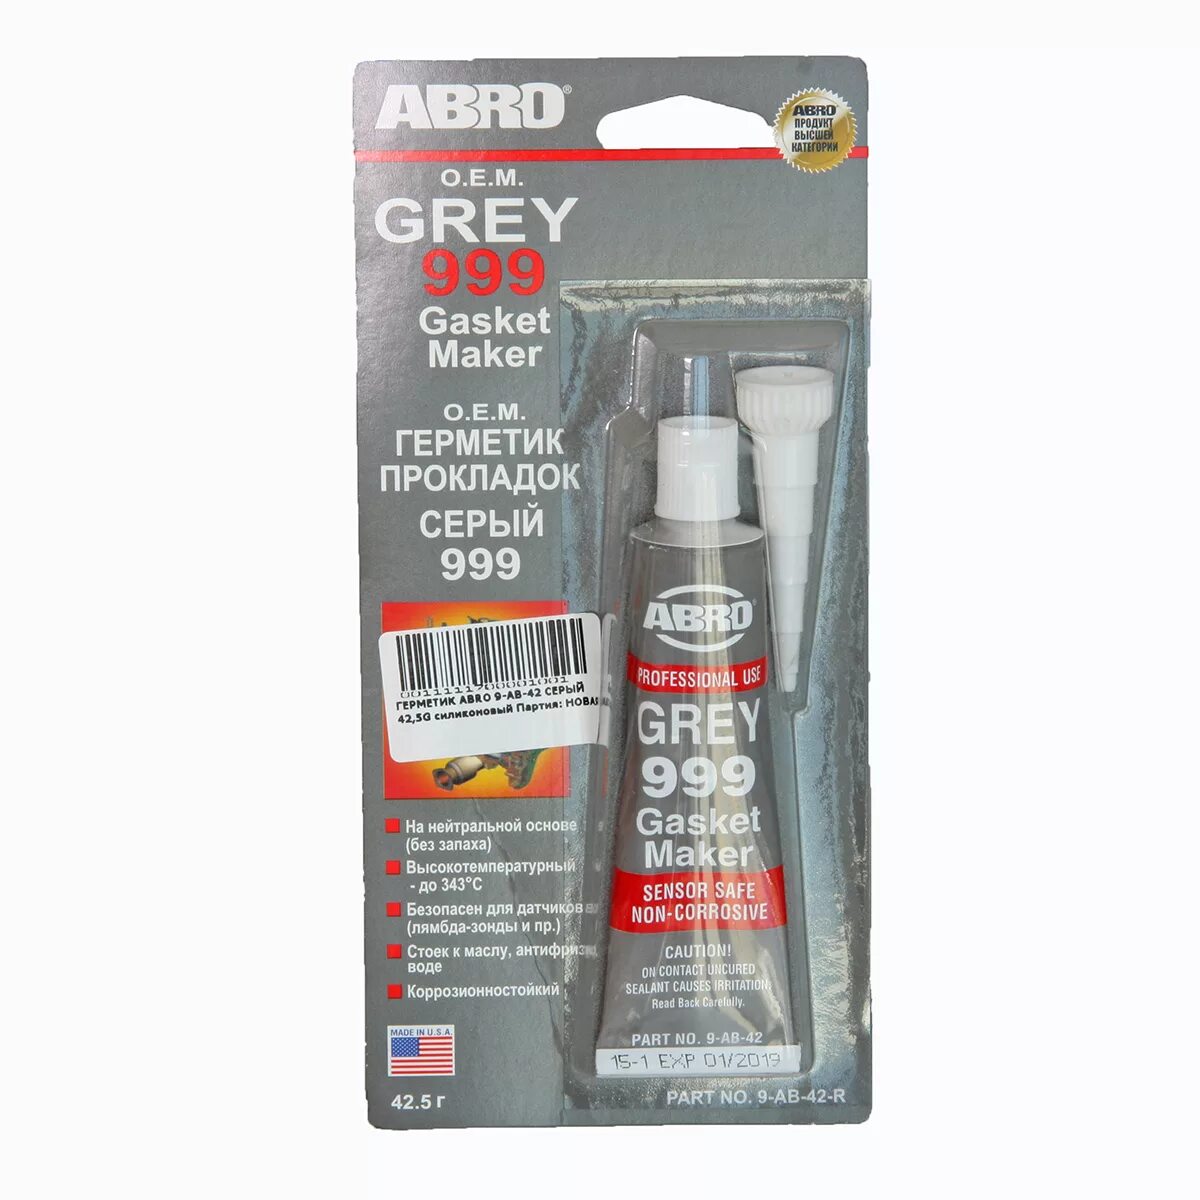 Где можно купить герметик. Abro 9-ab-42-RW. Герметик прокладок силиконовый abro, серый 42,5 г. Герметик прокладок abro (42.5гр) Grey 999. Герметик силиконовый abro 9ab.